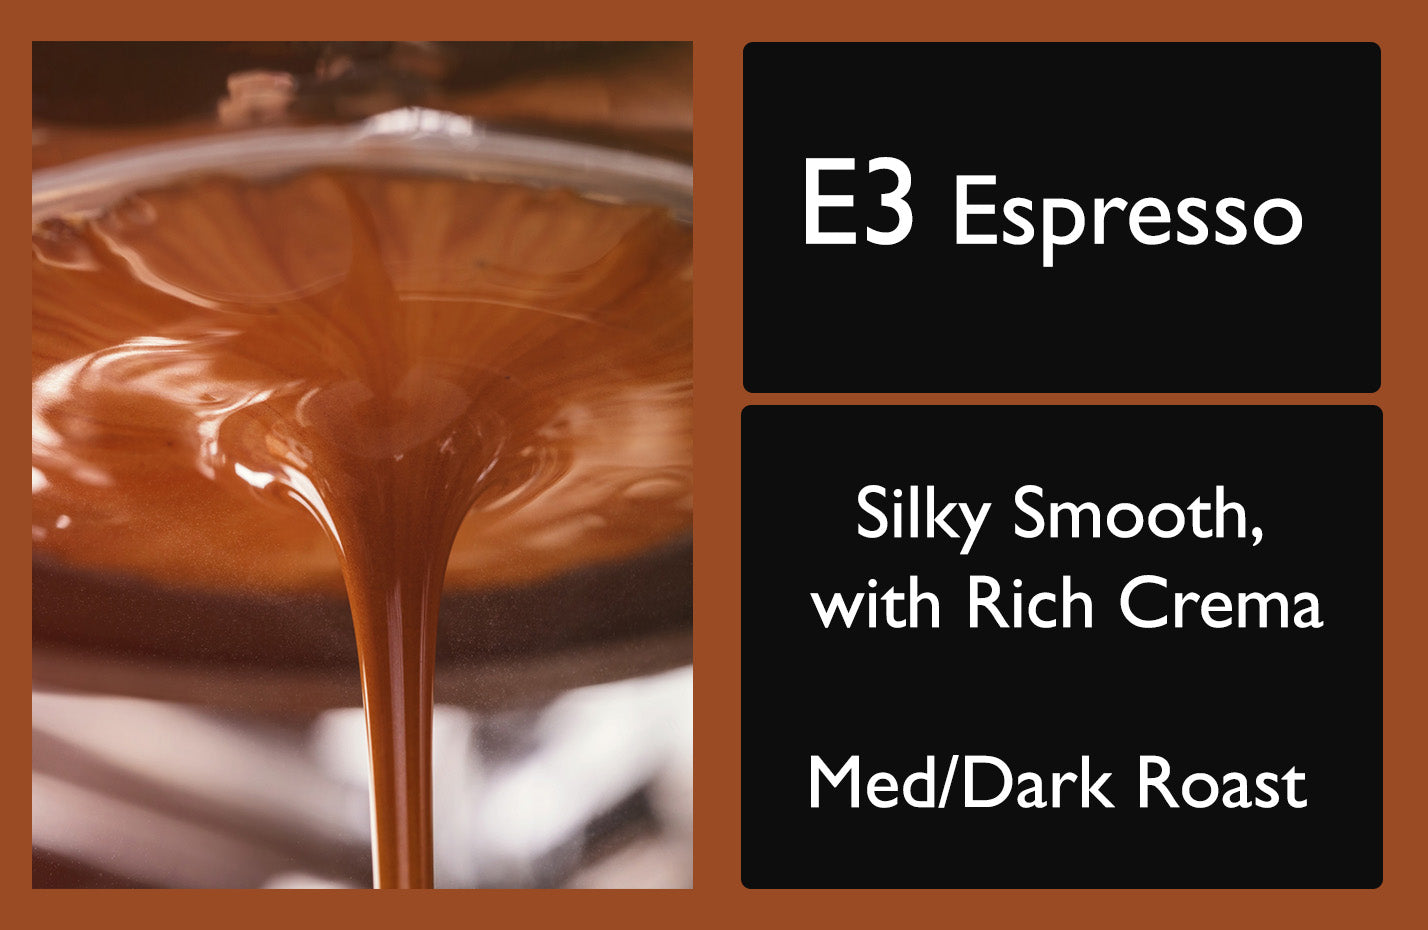 E3 Espresso Label